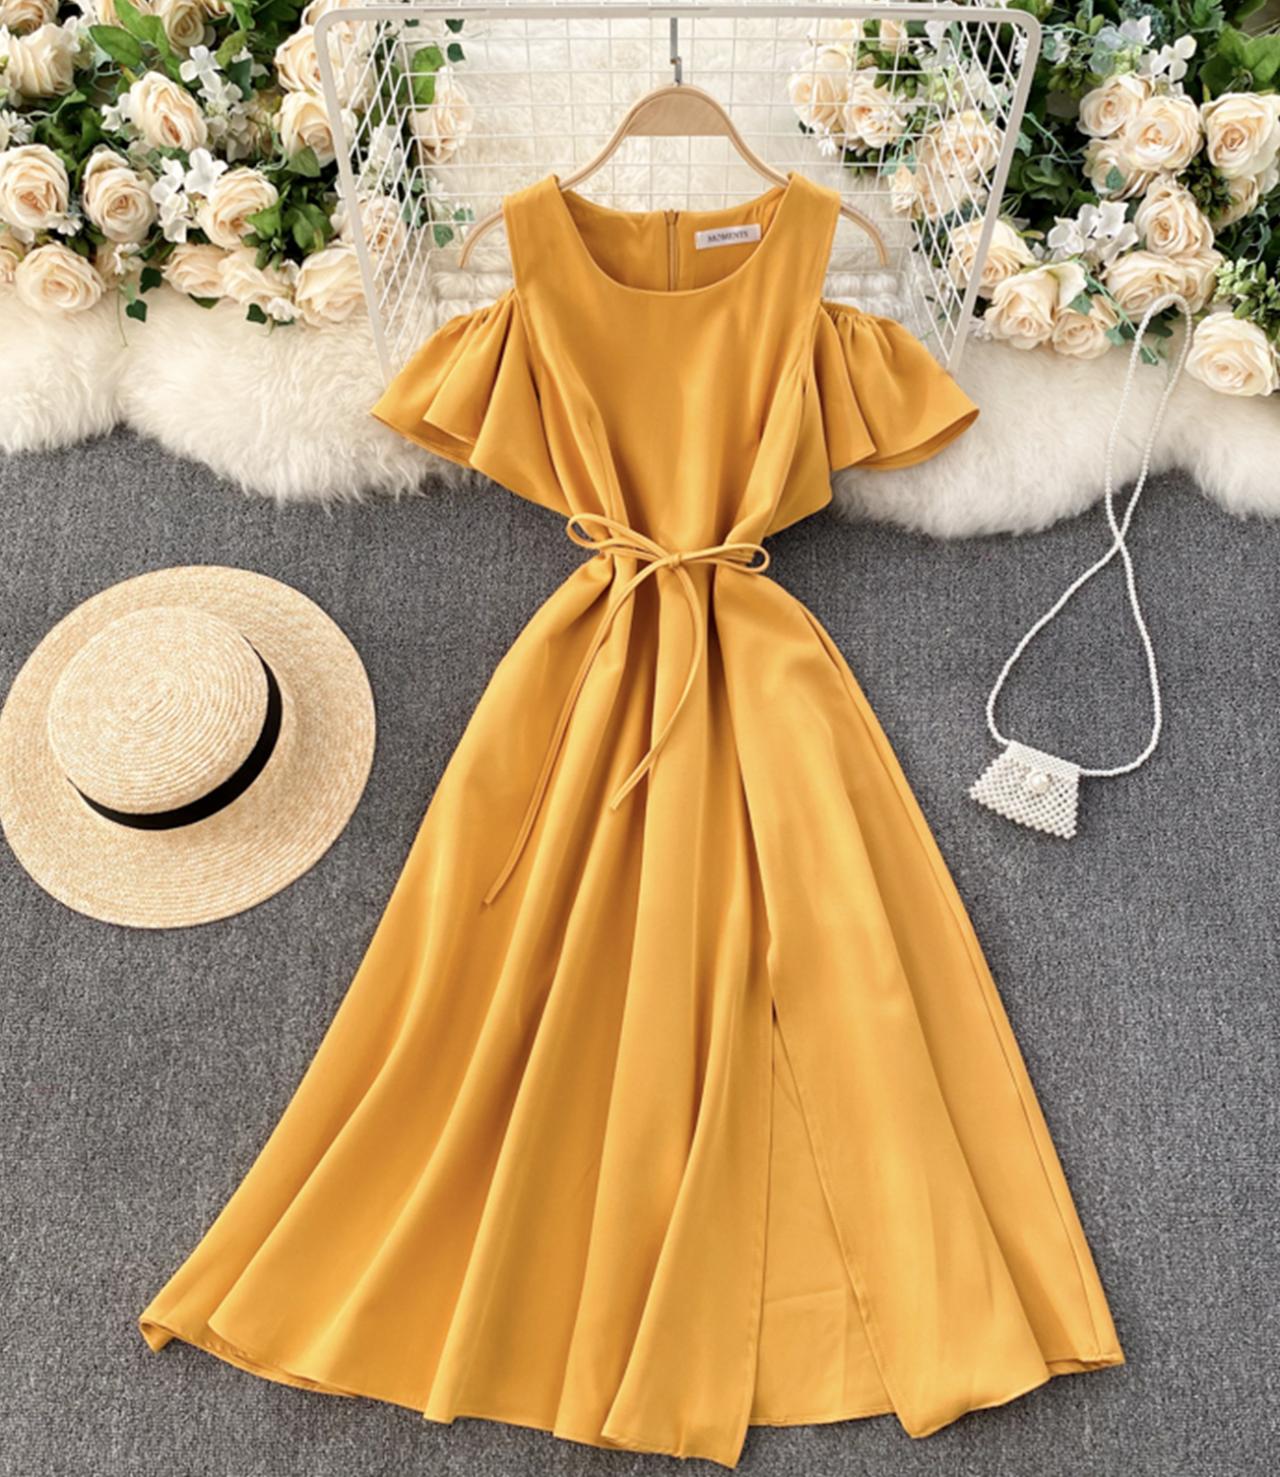 Süßes kurzes Kleid in A-Linie Modekleid 651